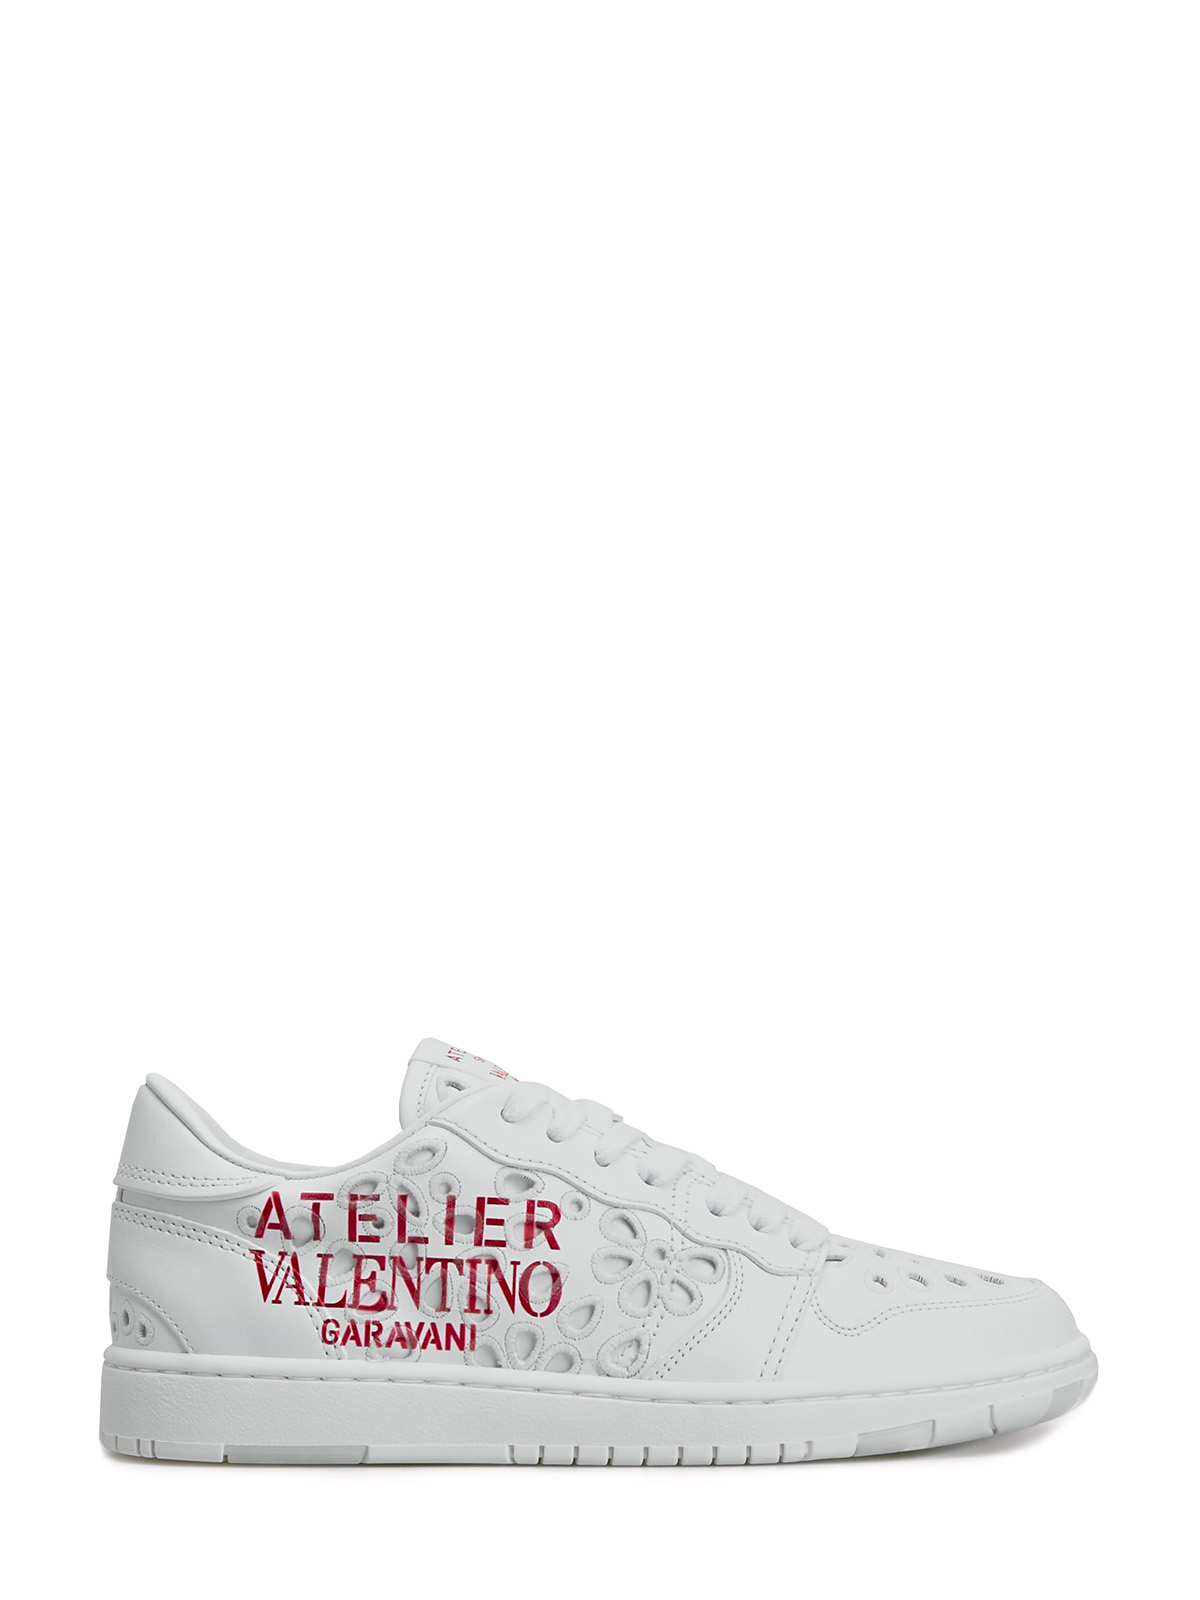 Кожаные кроссовки Atelier Shoes 08 San Gallo Edition VALENTINO GARAVANI, цвет белый, размер 36;36.5;37;37.5;38;38.5;39;40;39.5 - фото 1